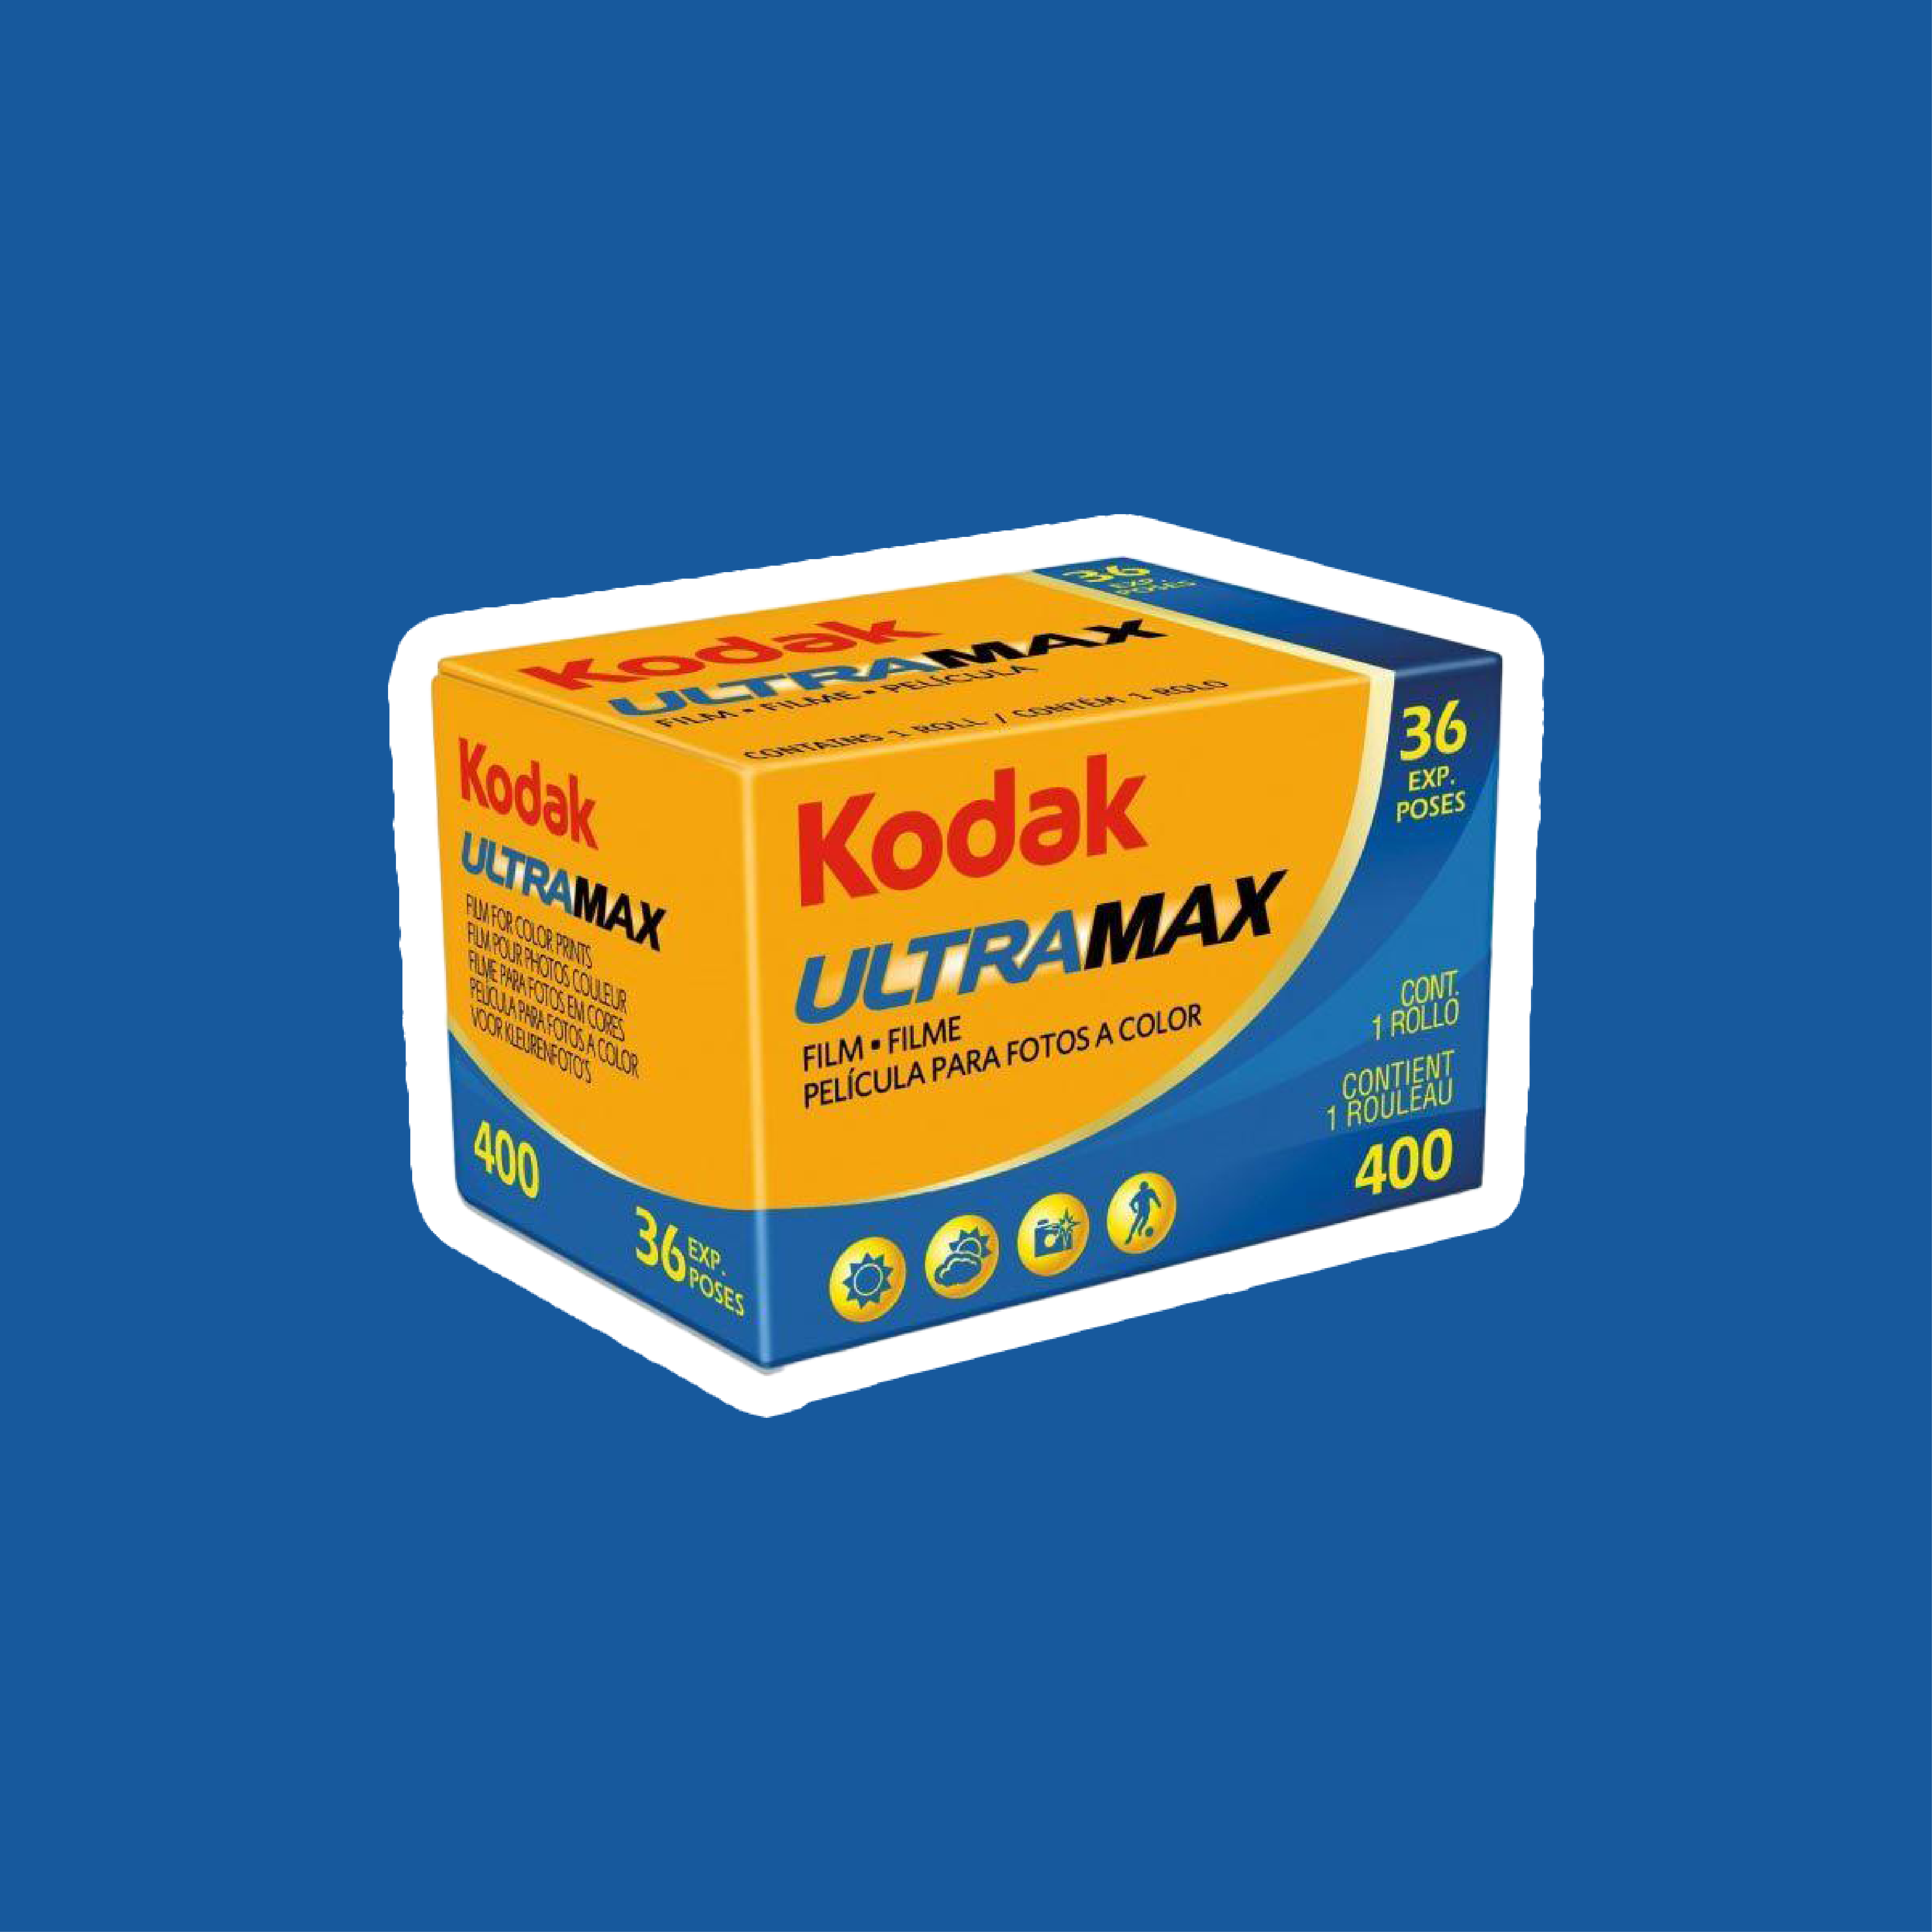 Kodak ULTRA MAX 400 135 36譫壽聴繧� 8譛ｬ繧ｻ繝�繝�-